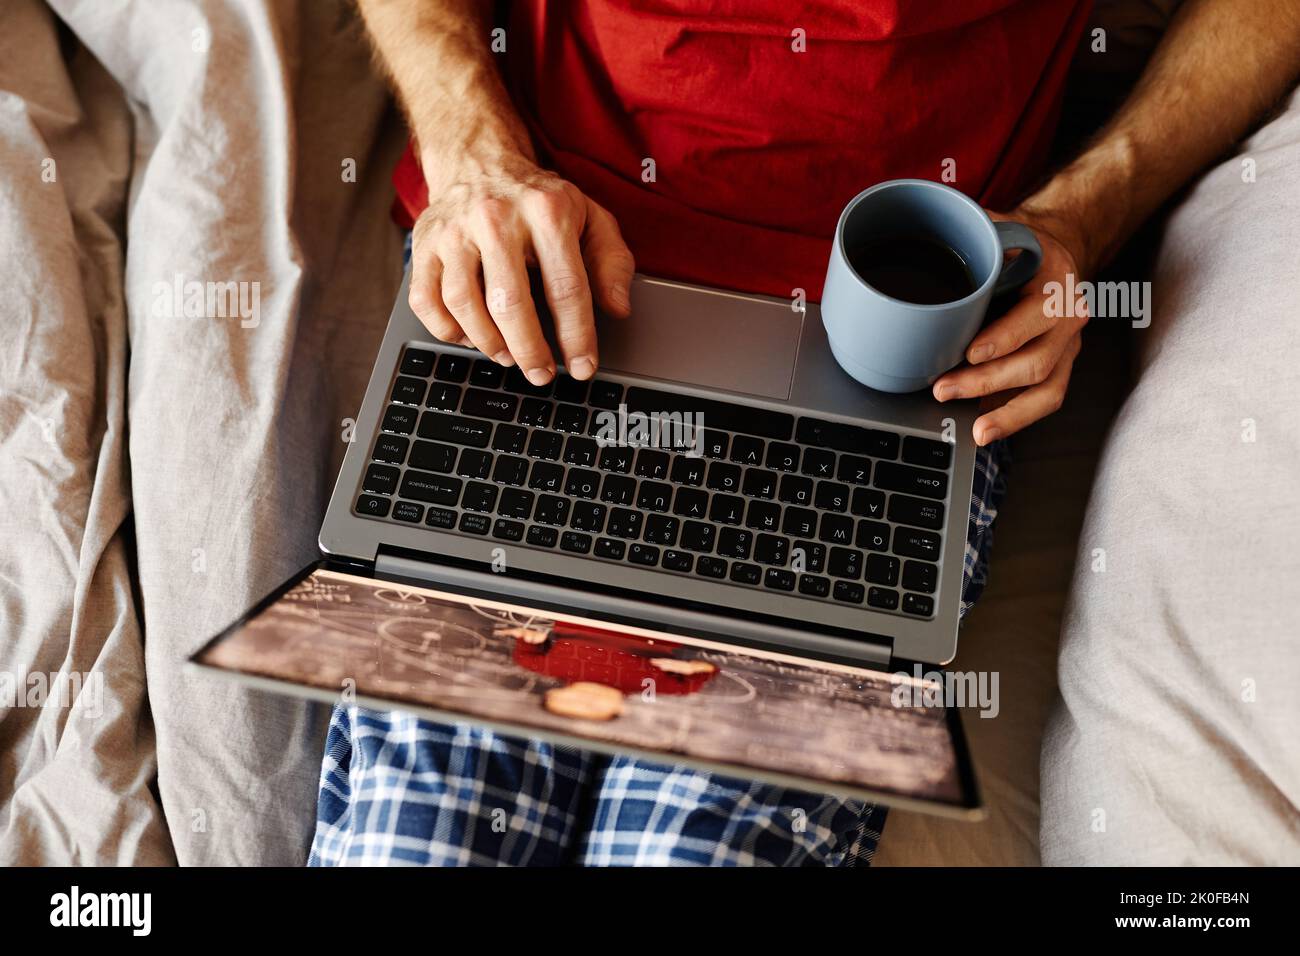 Vista ad angolo alto dell'uomo che guarda i video sul computer portatile e beve un caffè mentre si riposa sul letto Foto Stock